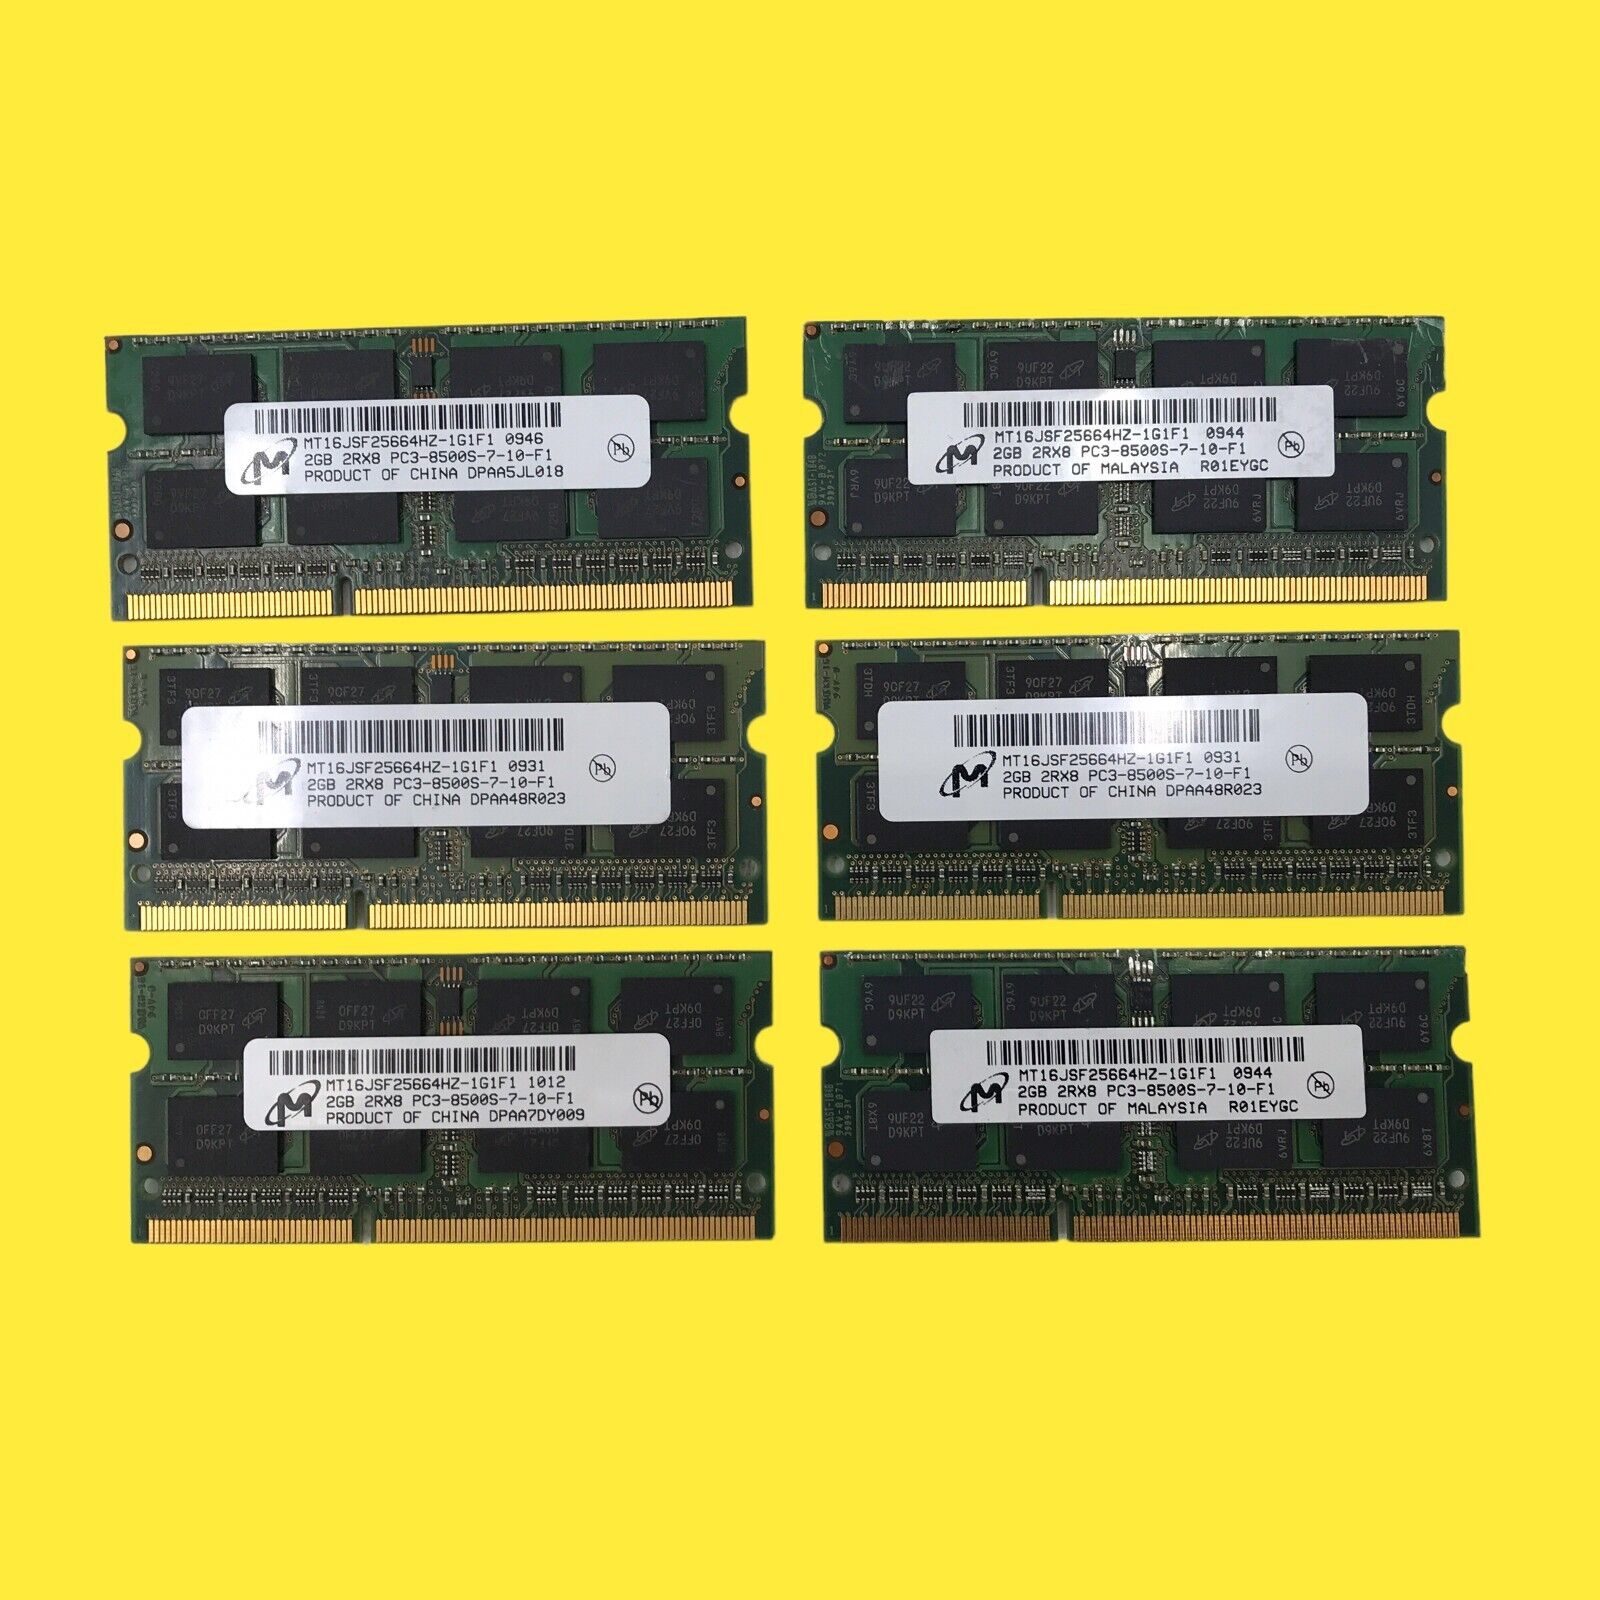 Lot of 6 Micron 2GB 2Rx8 PC3-8500s-7-10-F1 MT16JSF25664HZ-1G1F1 RAM Memory #1011